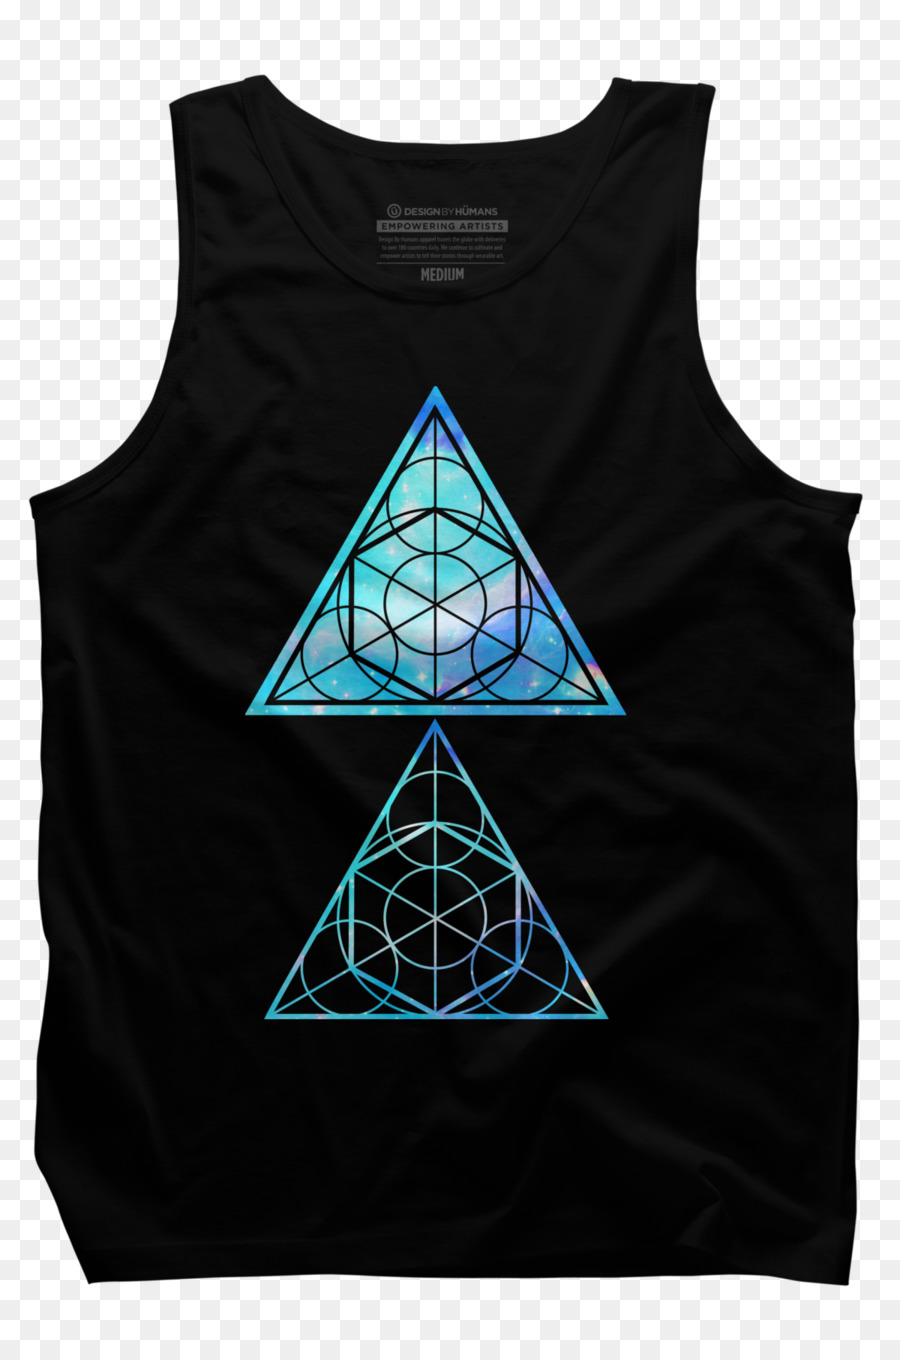 Langarm-T-shirt-Kissen Hoodie Gilets - Die Heilige geometrie